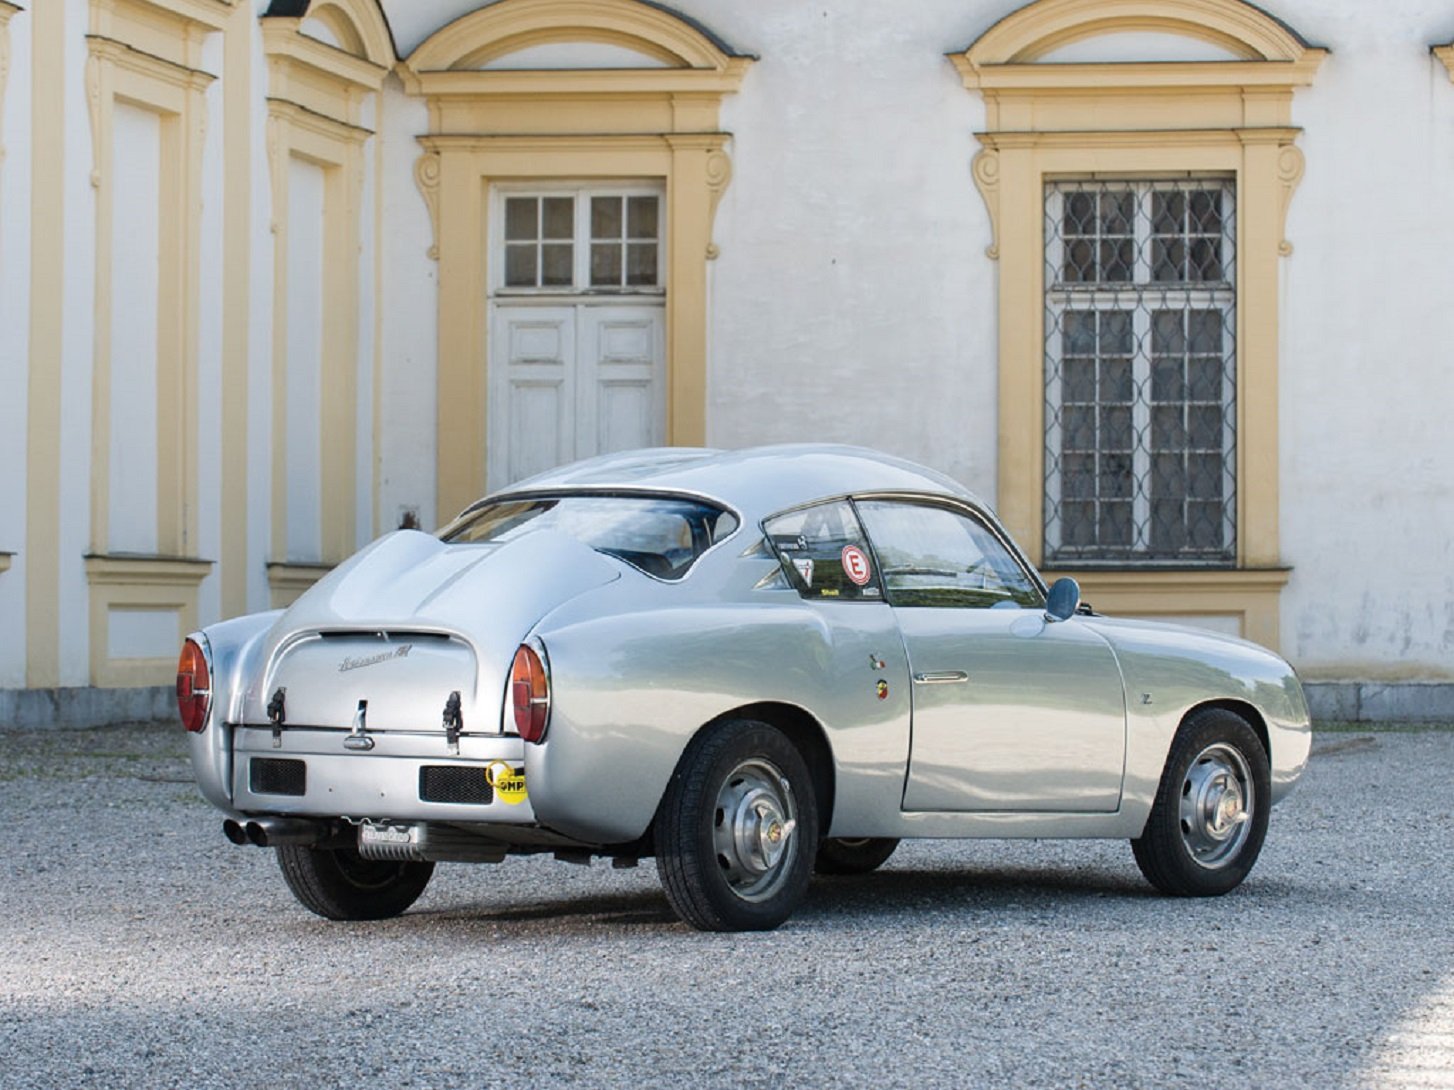 1958, Fiat abarth, 750 gt, Dubble, Bubble, Zagato, Cars, Classic Wallpaper